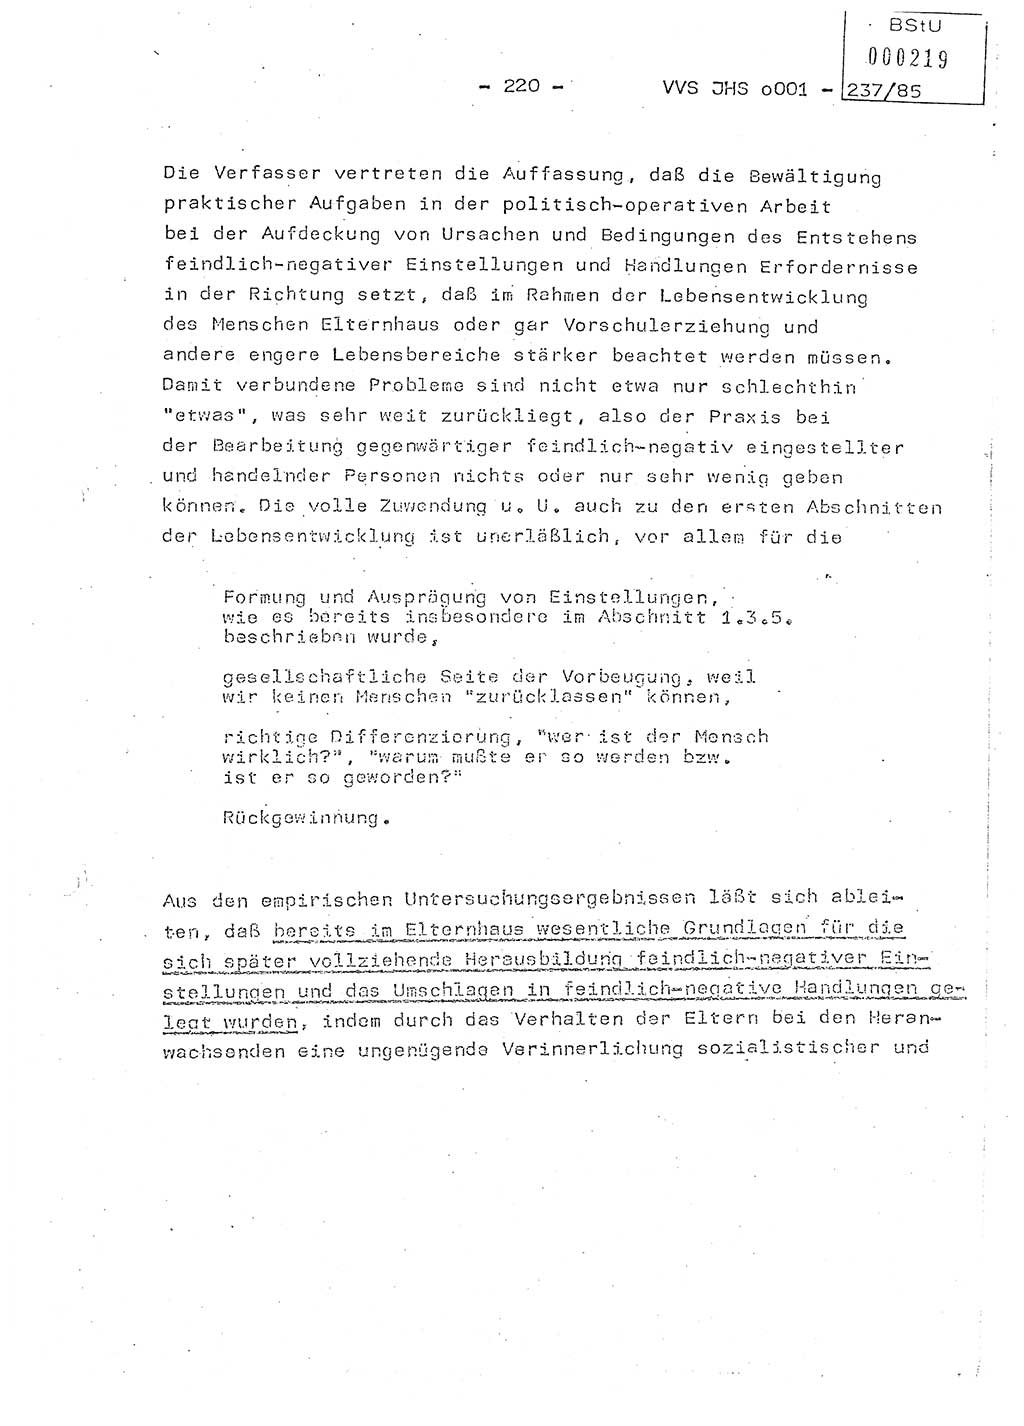 Dissertation Oberstleutnant Peter Jakulski (JHS), Oberstleutnat Christian Rudolph (HA Ⅸ), Major Horst Böttger (ZMD), Major Wolfgang Grüneberg (JHS), Major Albert Meutsch (JHS), Ministerium für Staatssicherheit (MfS) [Deutsche Demokratische Republik (DDR)], Juristische Hochschule (JHS), Vertrauliche Verschlußsache (VVS) o001-237/85, Potsdam 1985, Seite 220 (Diss. MfS DDR JHS VVS o001-237/85 1985, S. 220)